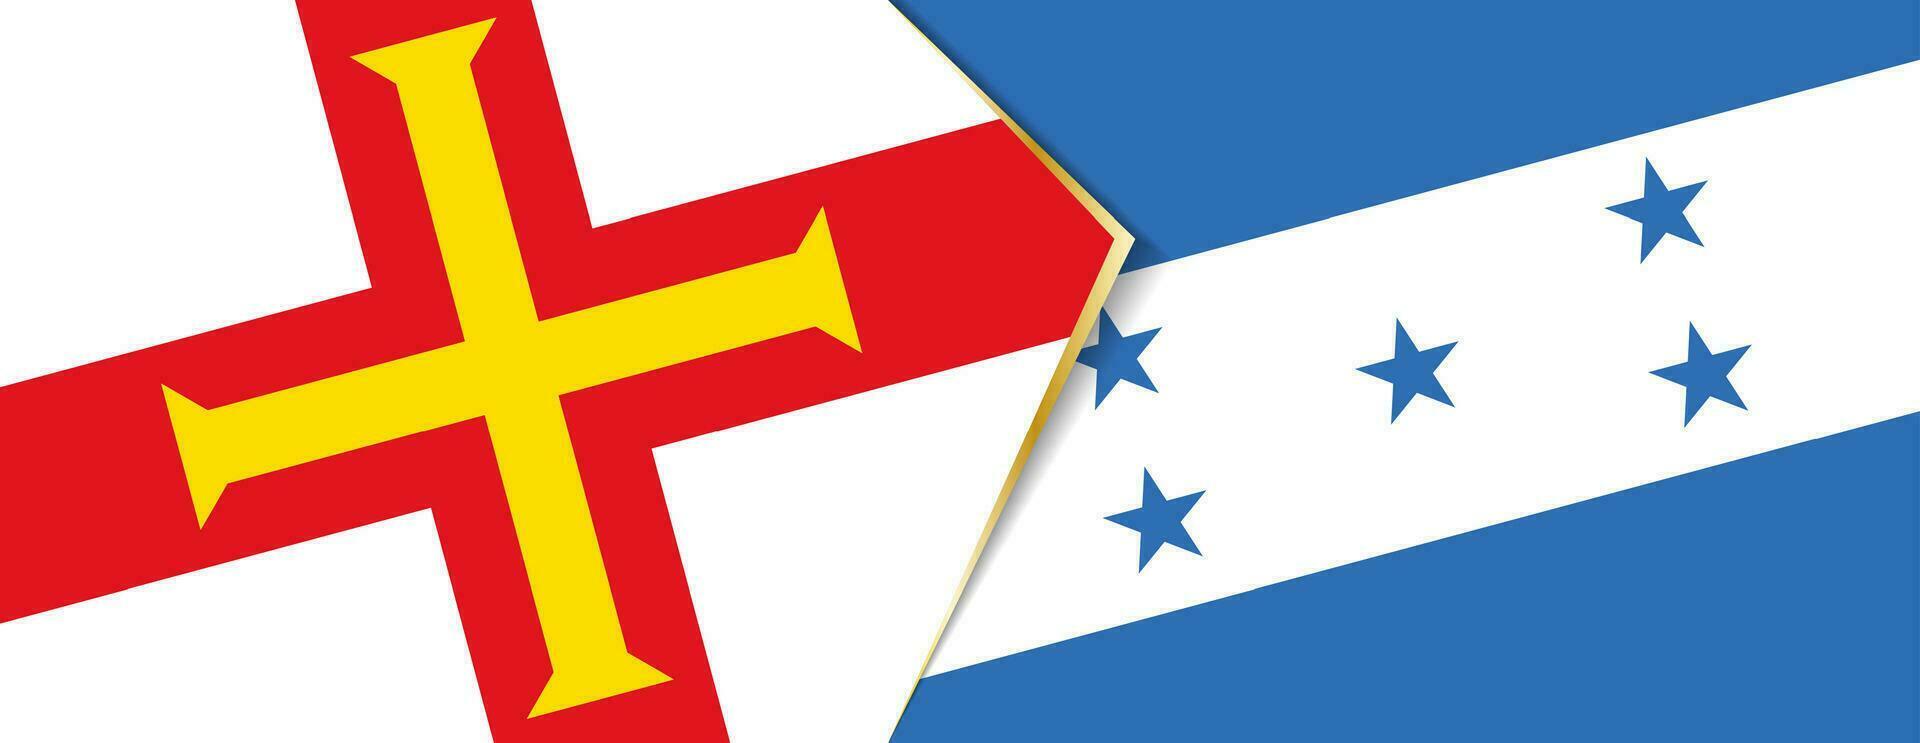 Guernsey und Honduras Flaggen, zwei Vektor Flaggen.